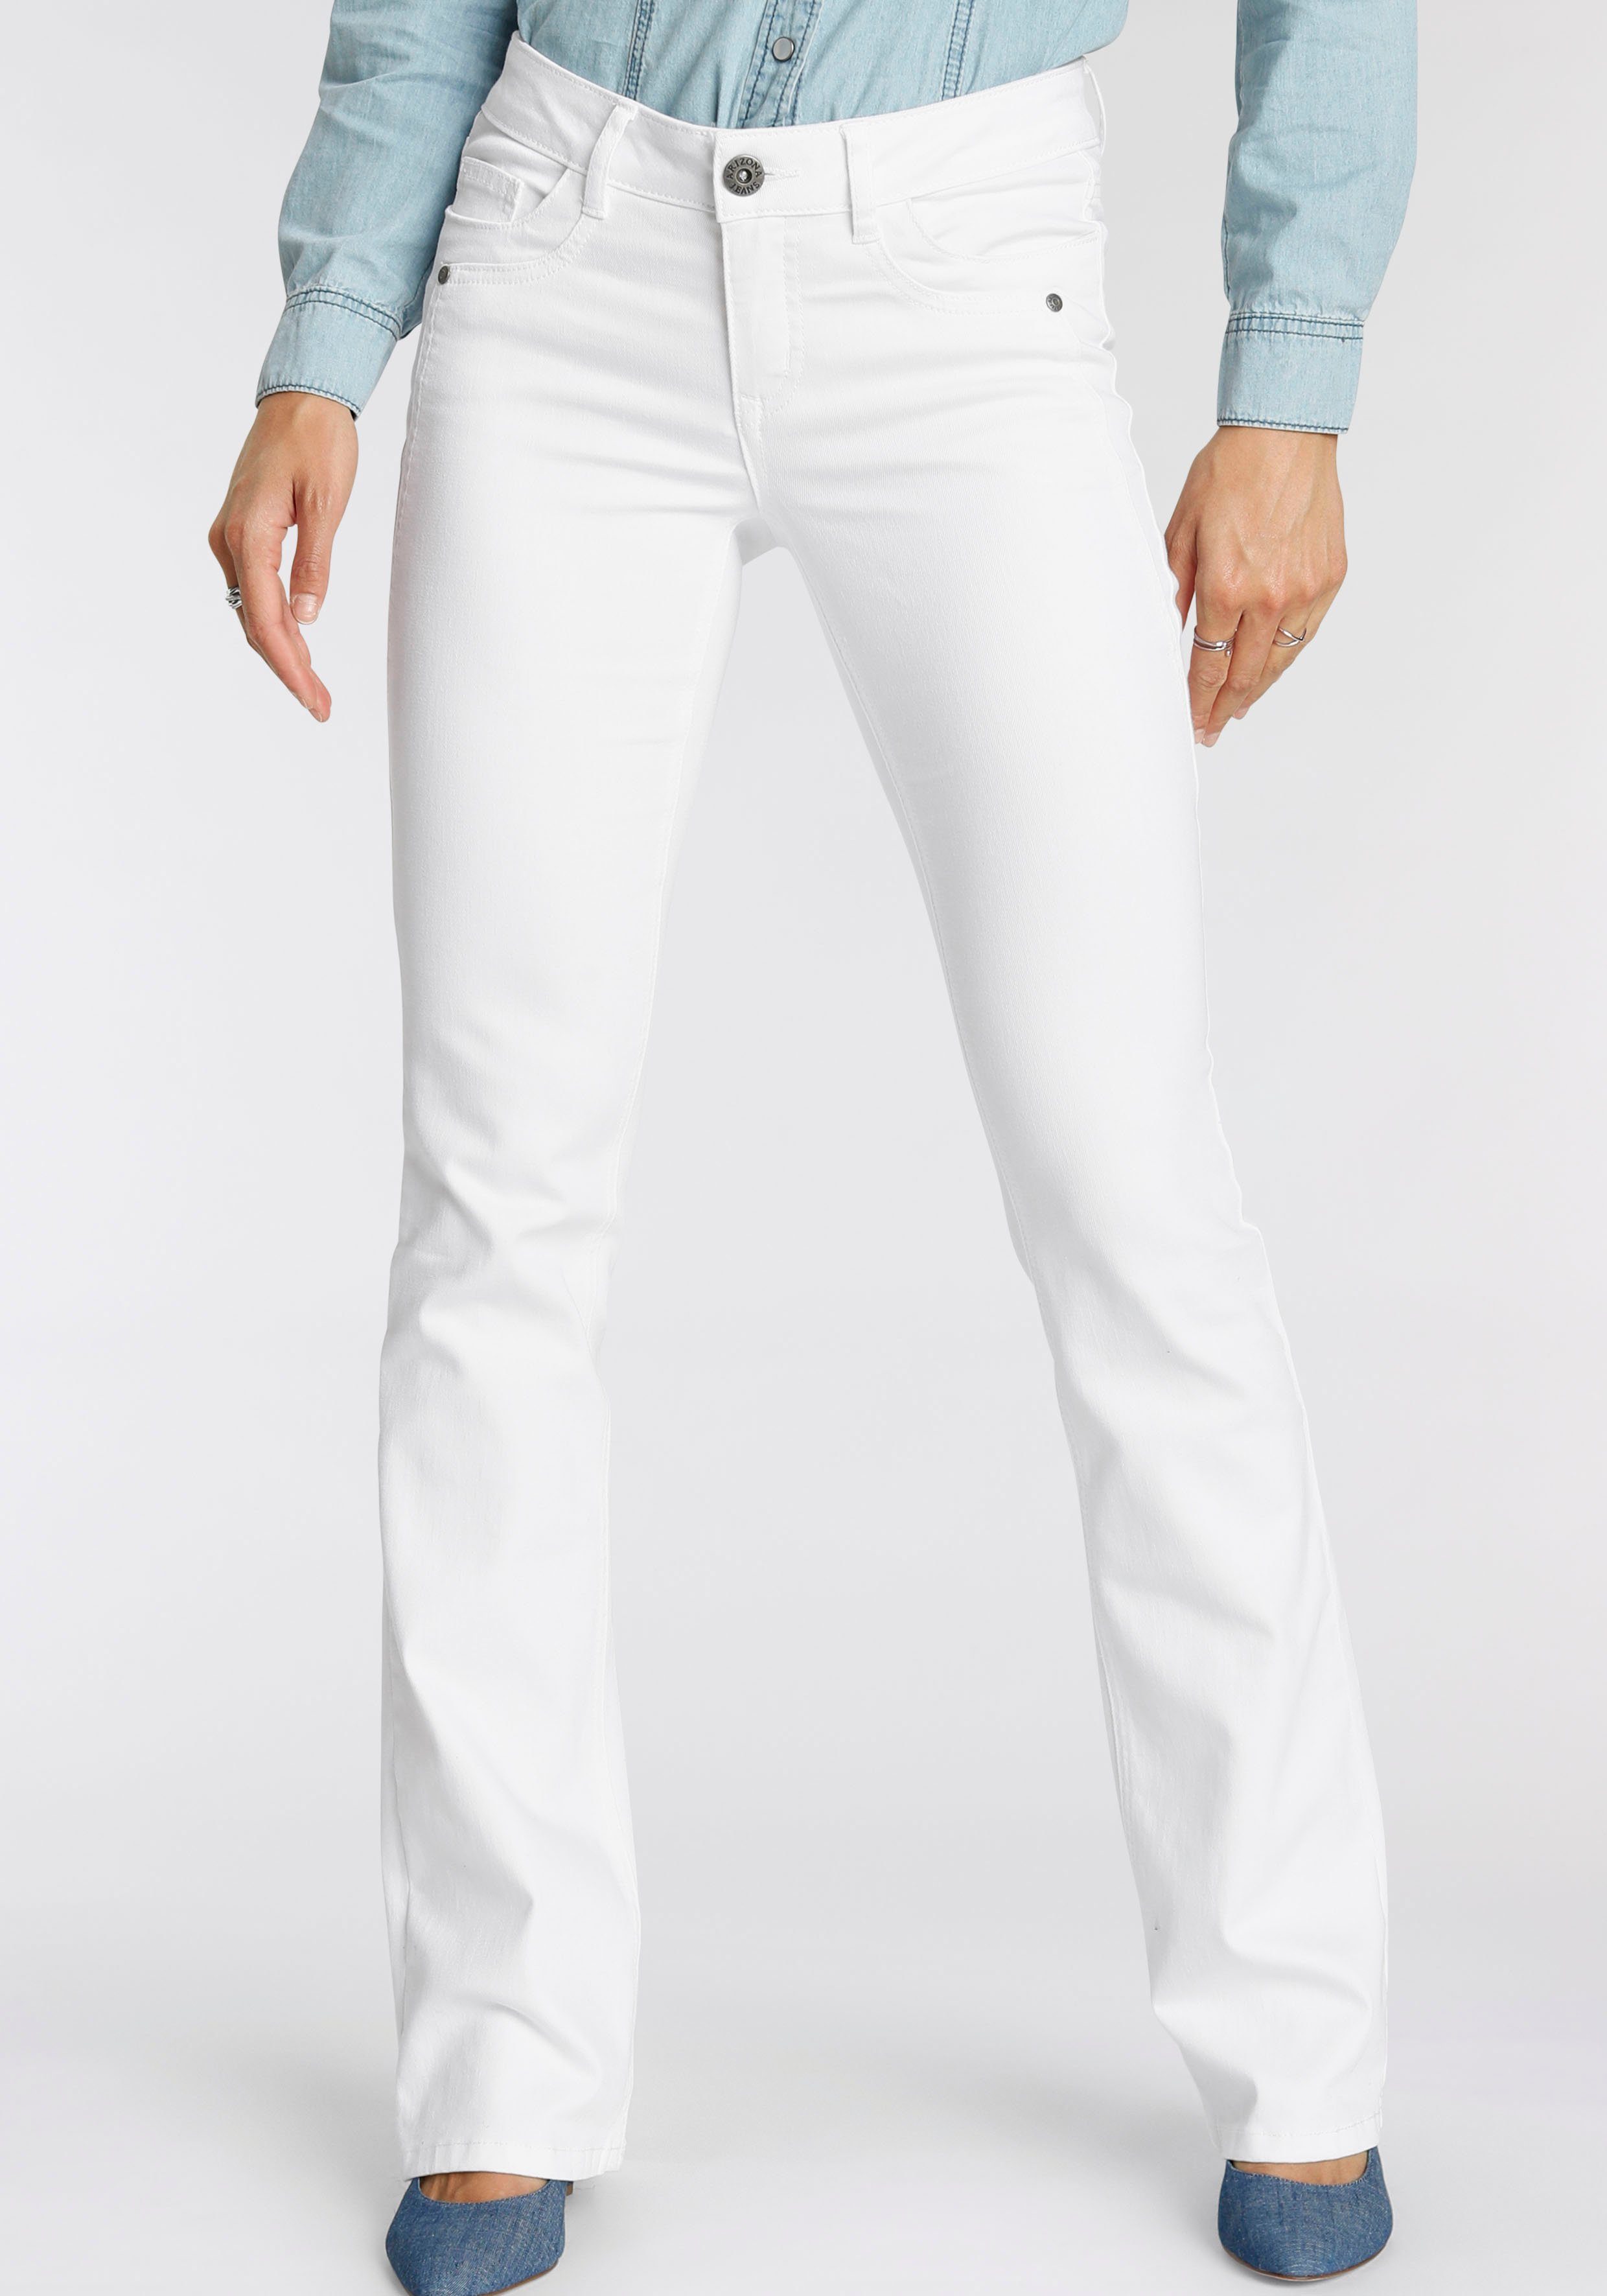 Weiße Jeans mit niedrigem Bund für Damen online kaufen | OTTO